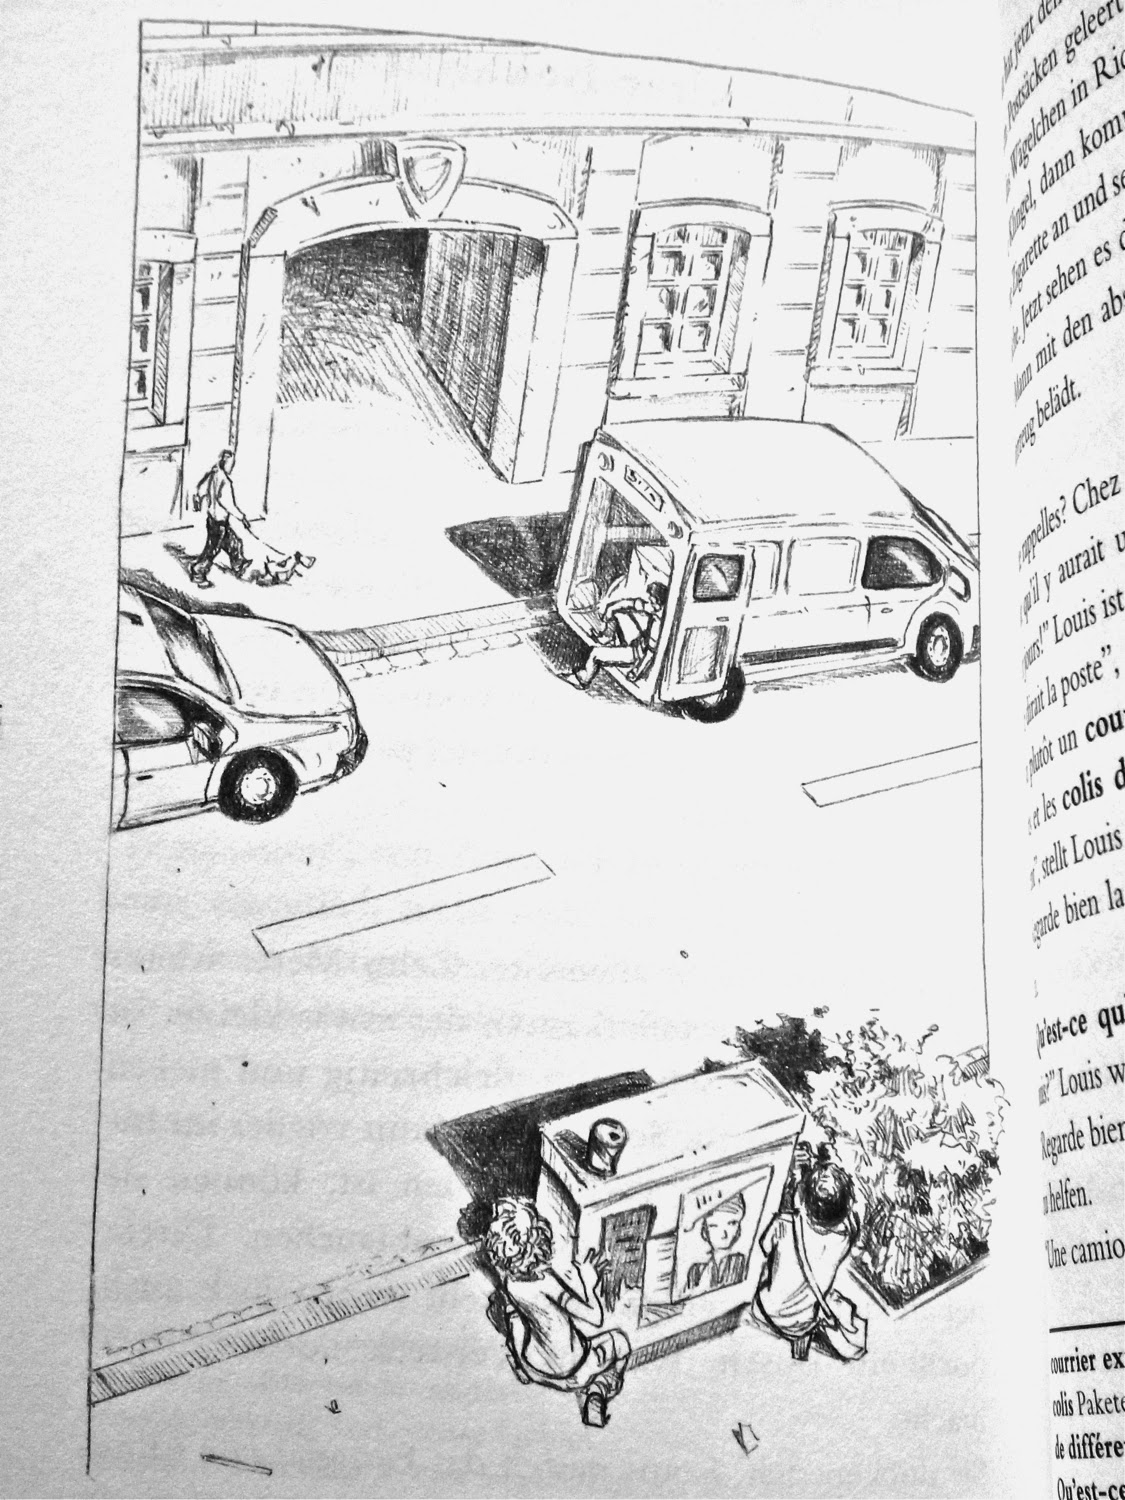 Blick ins Buch: Die Kinder beobachten, hinter einem Trafokasten versteckt, die andere Straßenseite